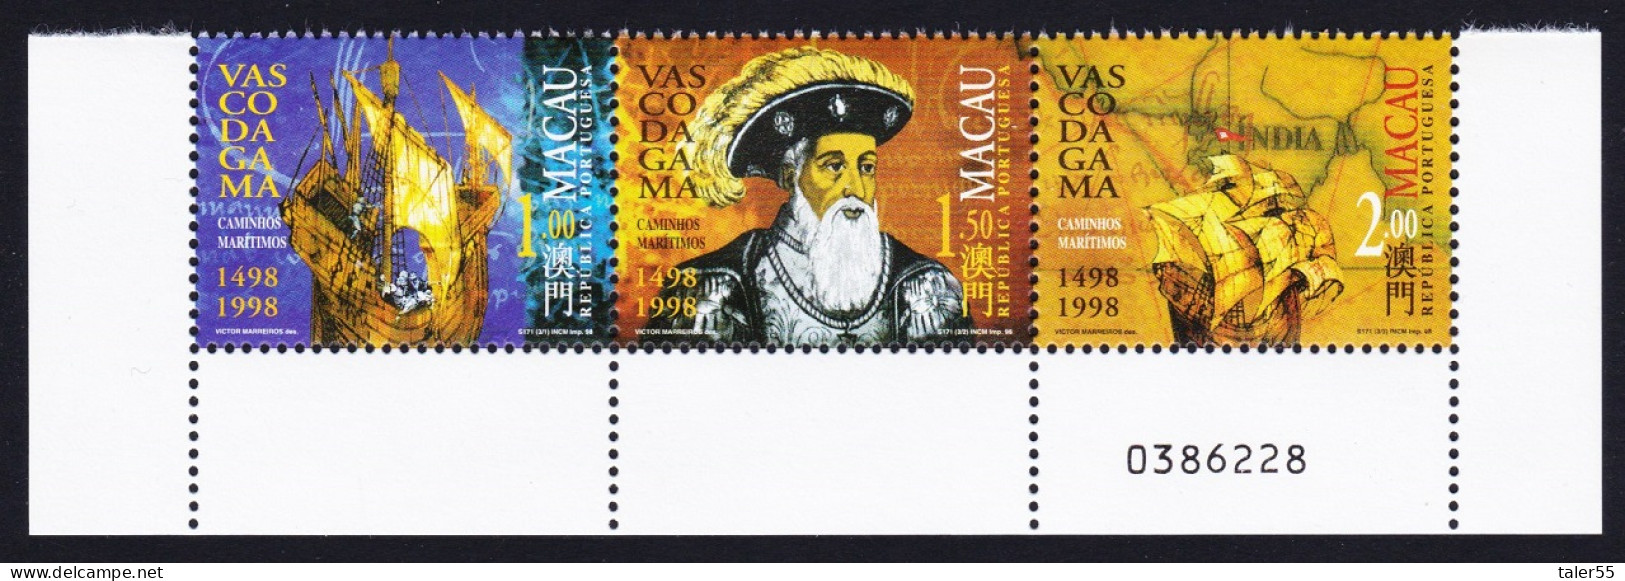 Macao Macau Vasco Da Gama 1498 Strip Of 3v Control Number 1998 MNH SG#1044-1046 Sc#943-946 - Nuevos